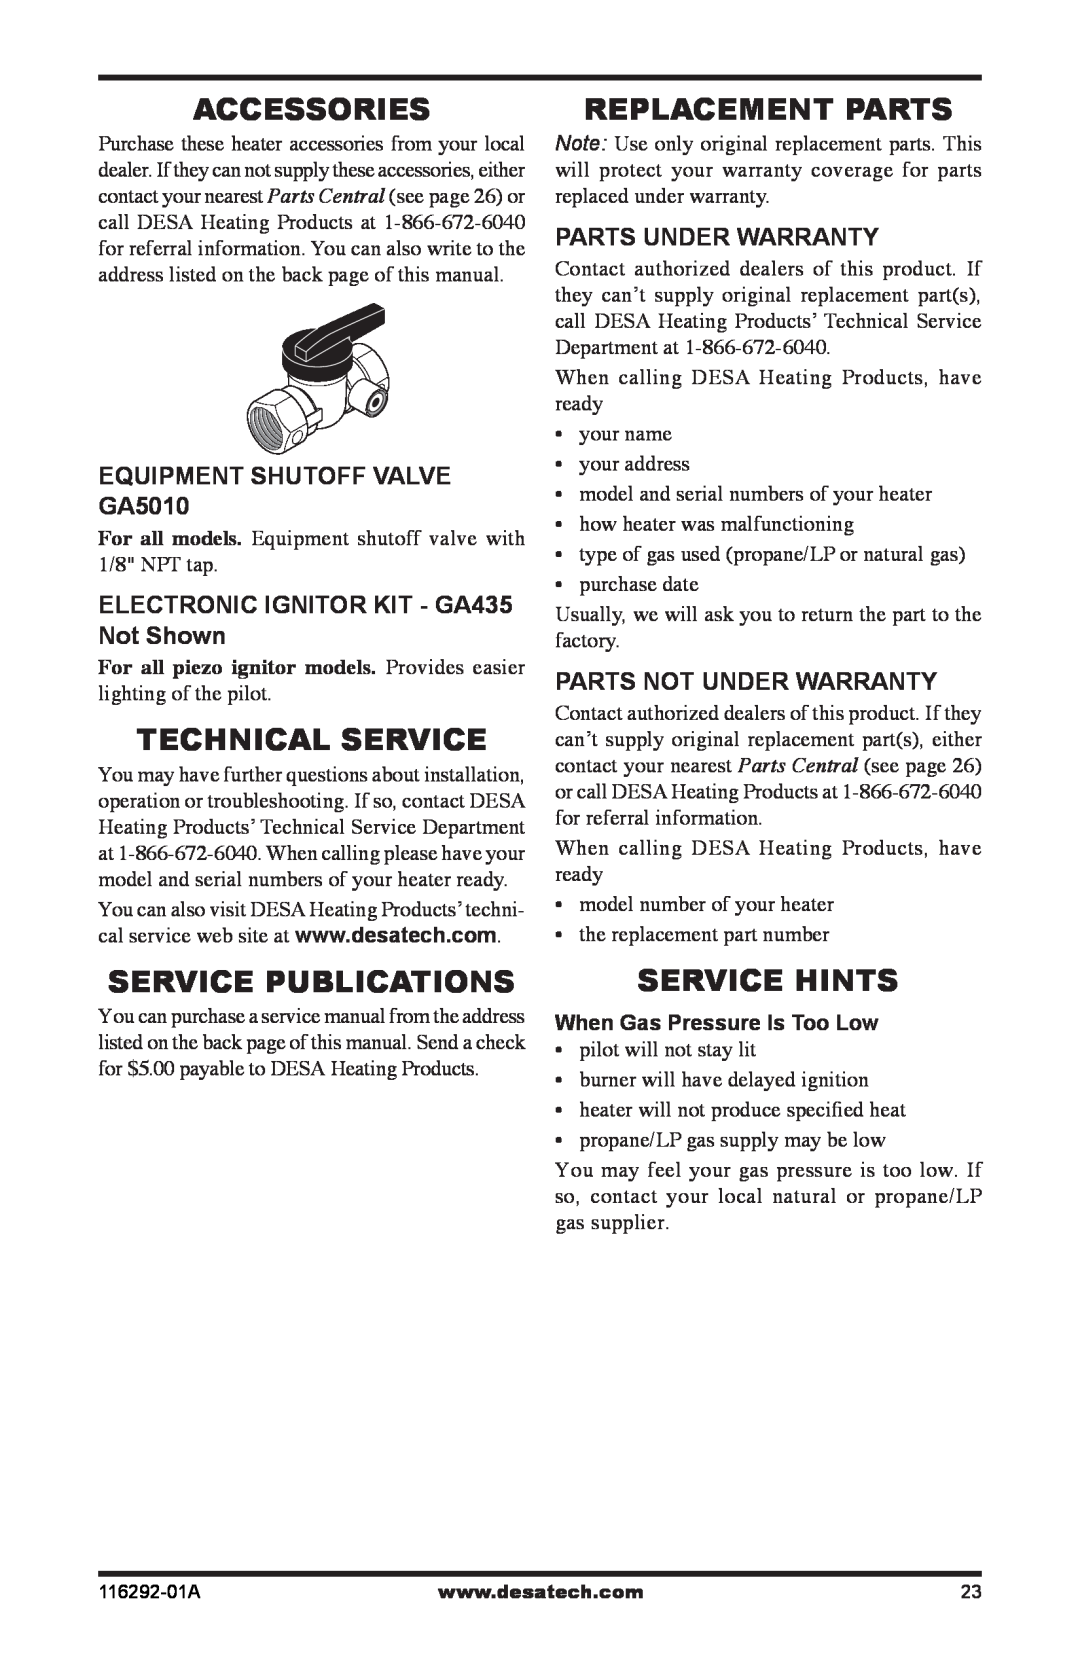 Desa VSL18NT Accessories, Technical Service, Replacement Parts, Service Publications, Service Hints, Parts Under Warranty 